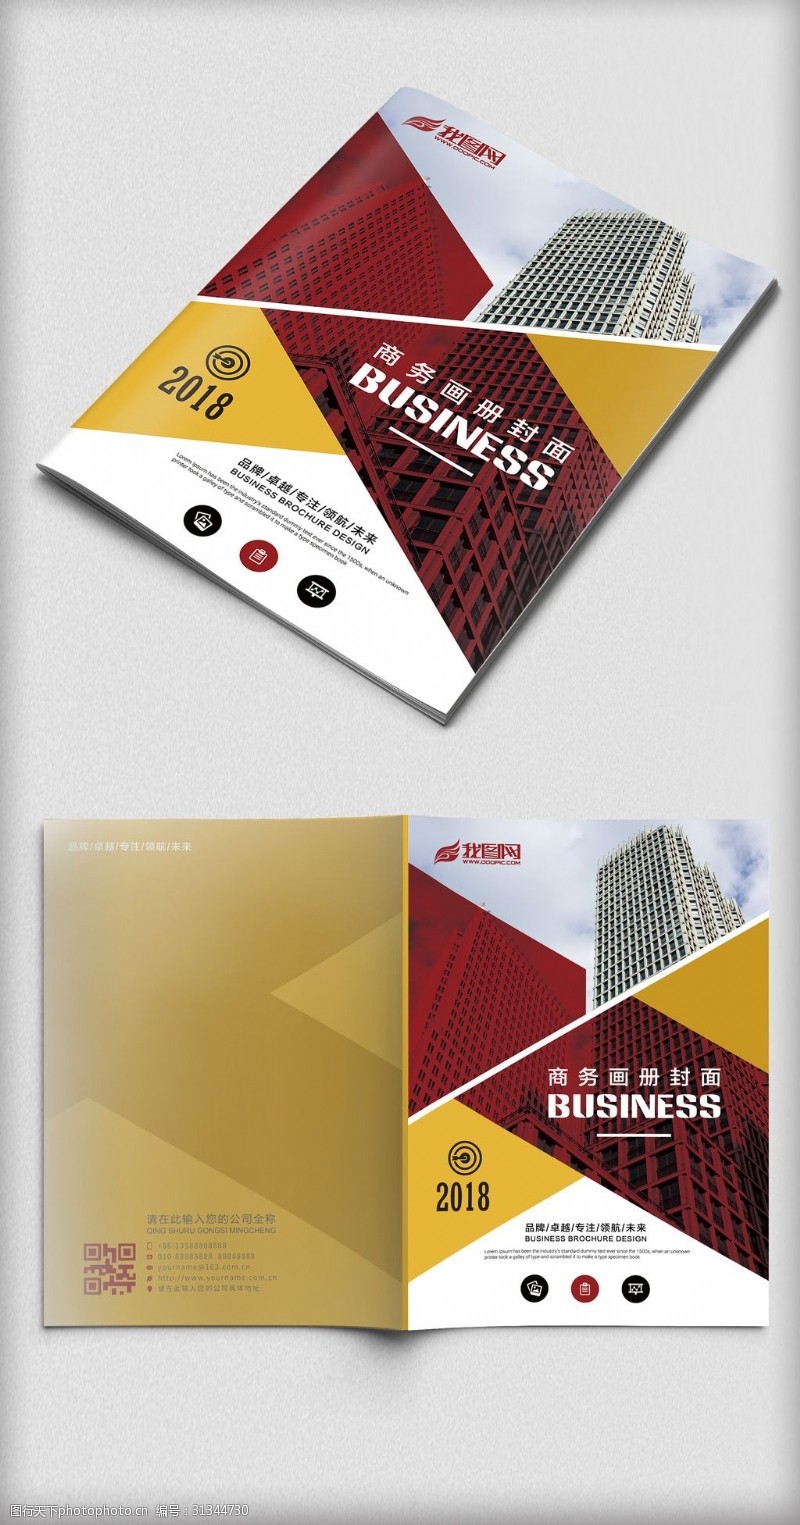 企业画册模板下载红色几何商务企业宣传画册封面设计